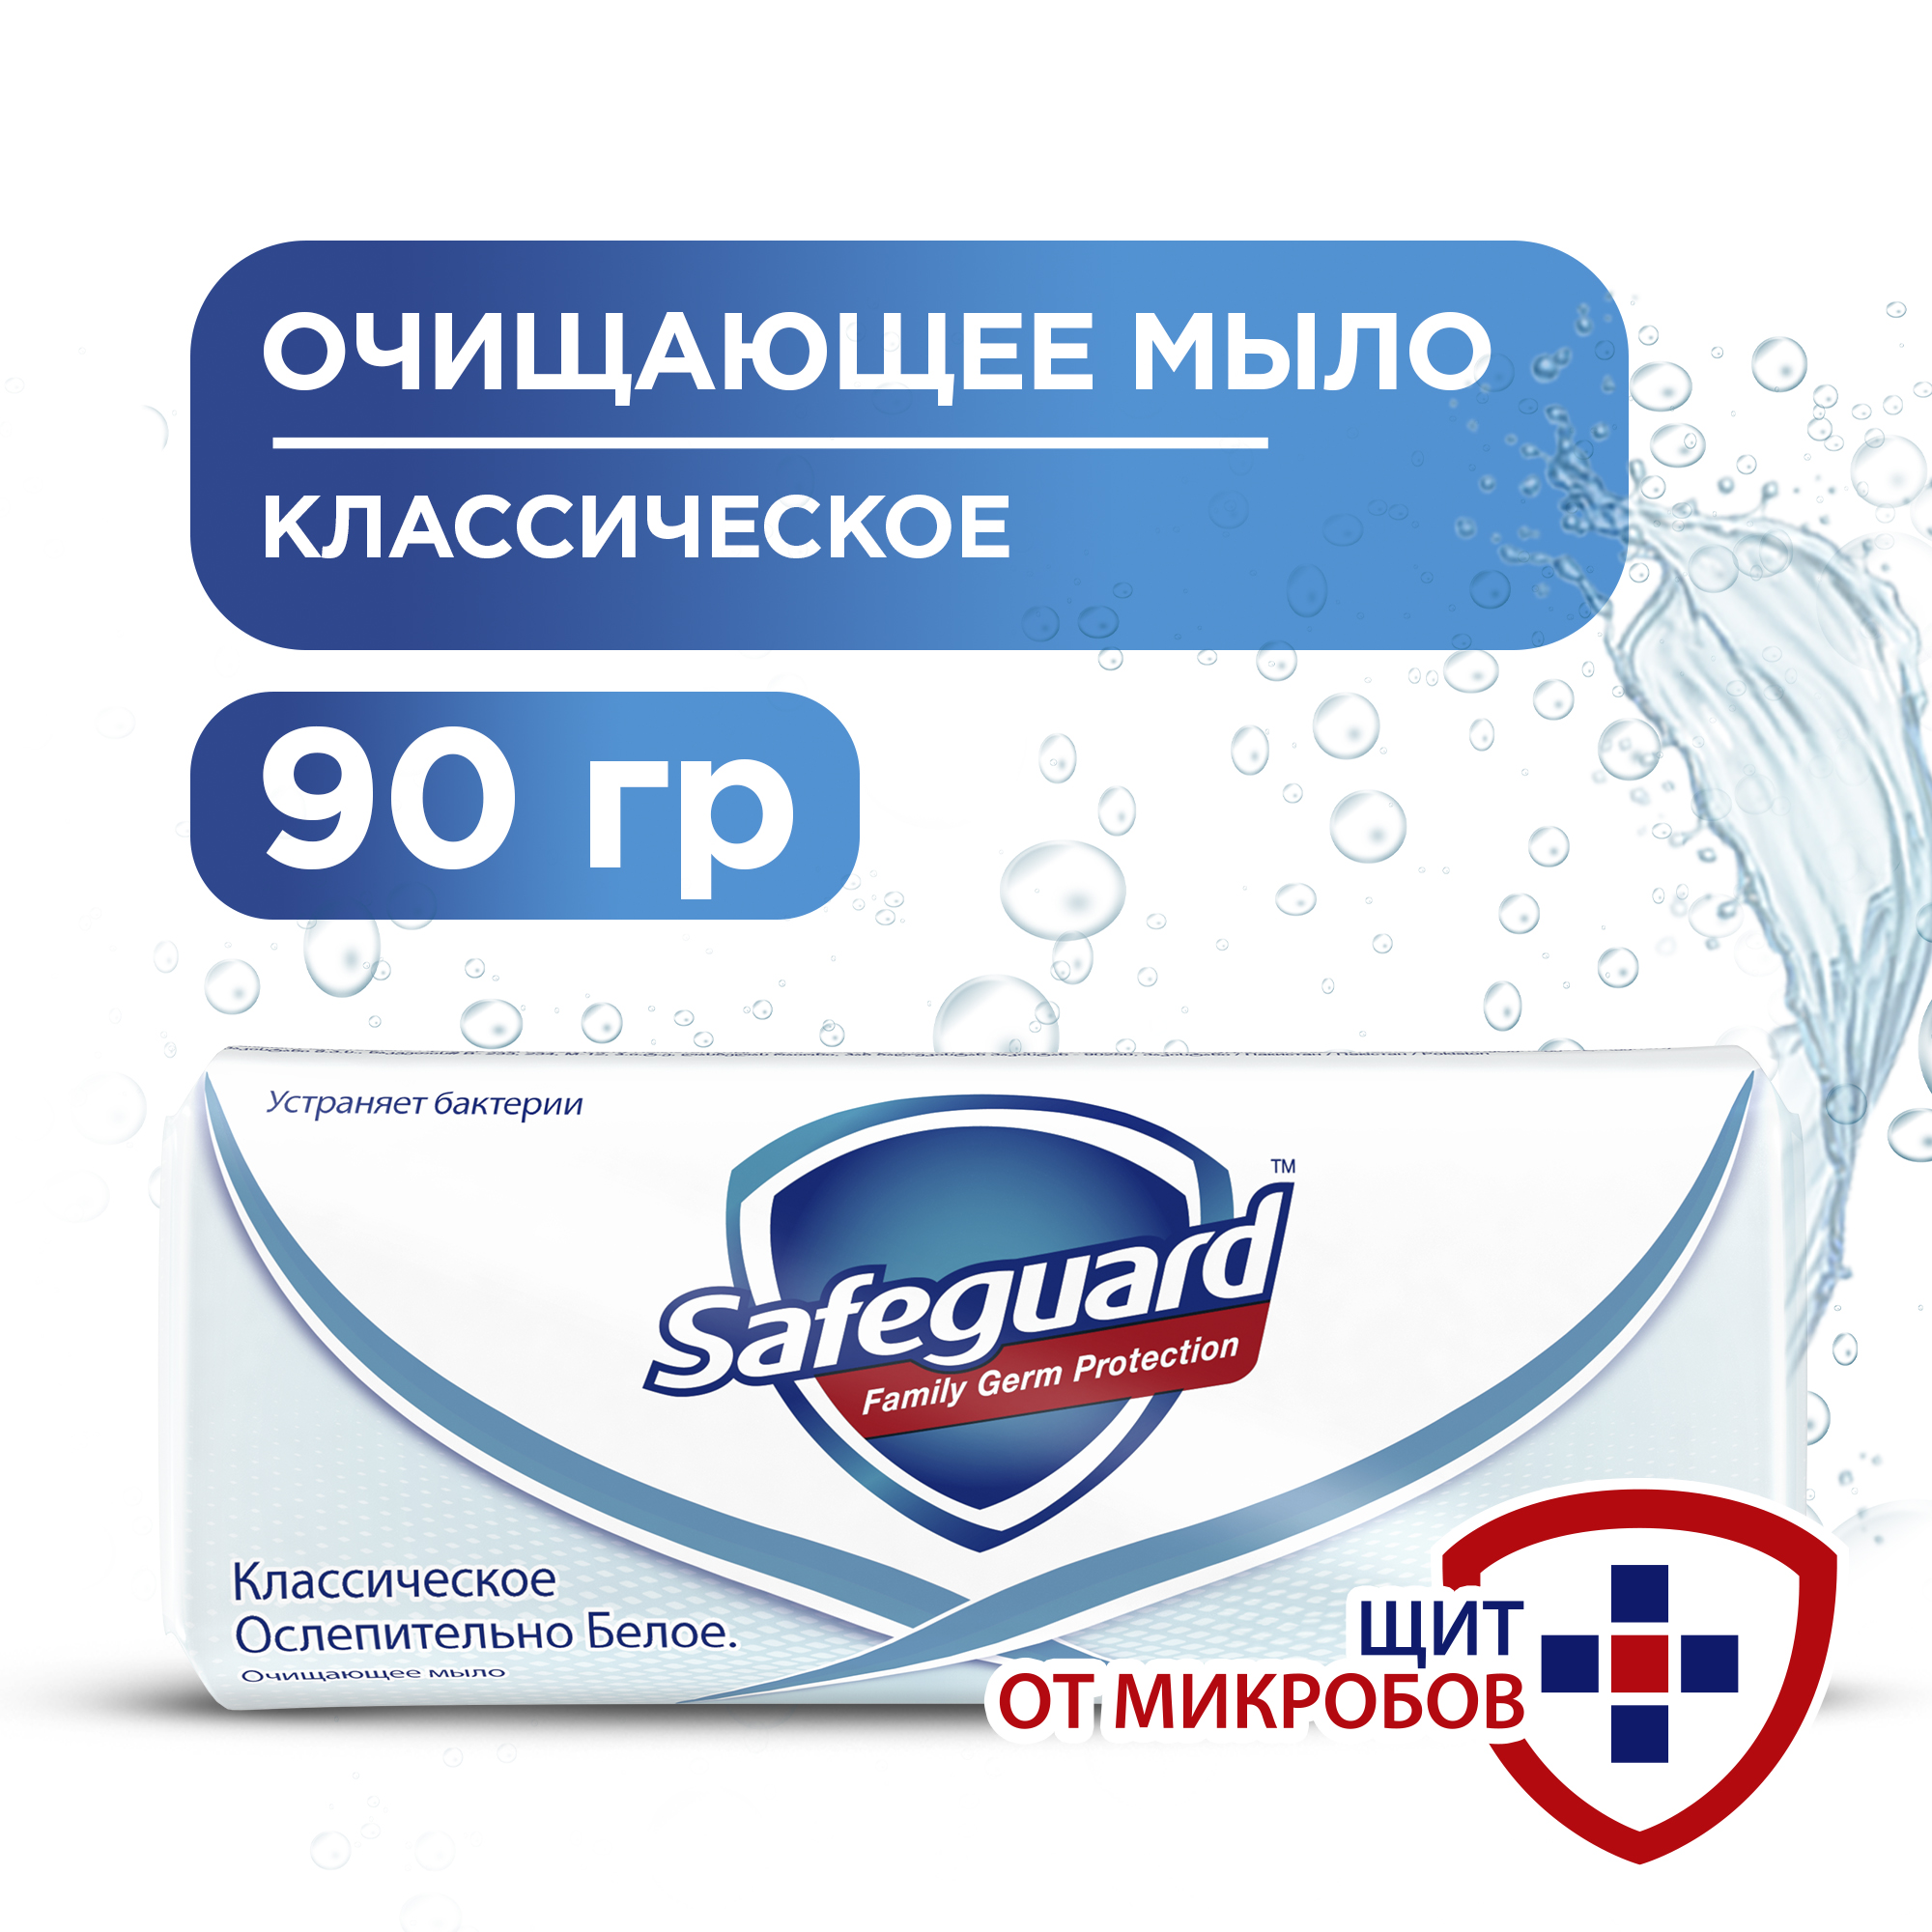 Мыло Safeguard, антибактериальное, классическое ослепительно белое 90 г. красное чёрное белое и нечто совершенно иное